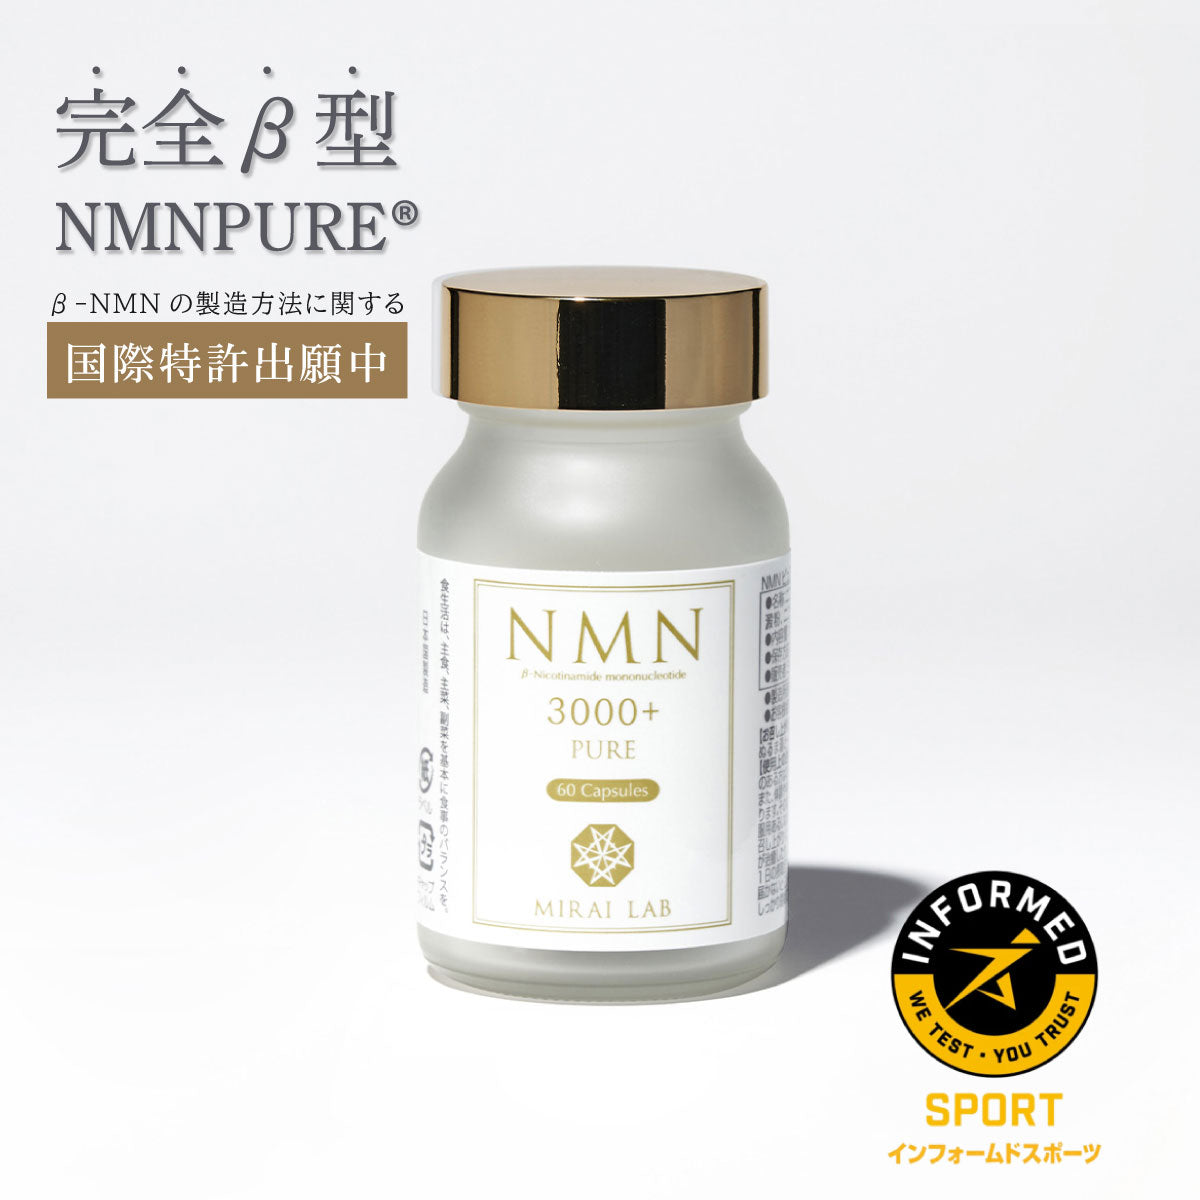 【定期購入】NMN ピュア 3000 プラス(60カプセル)